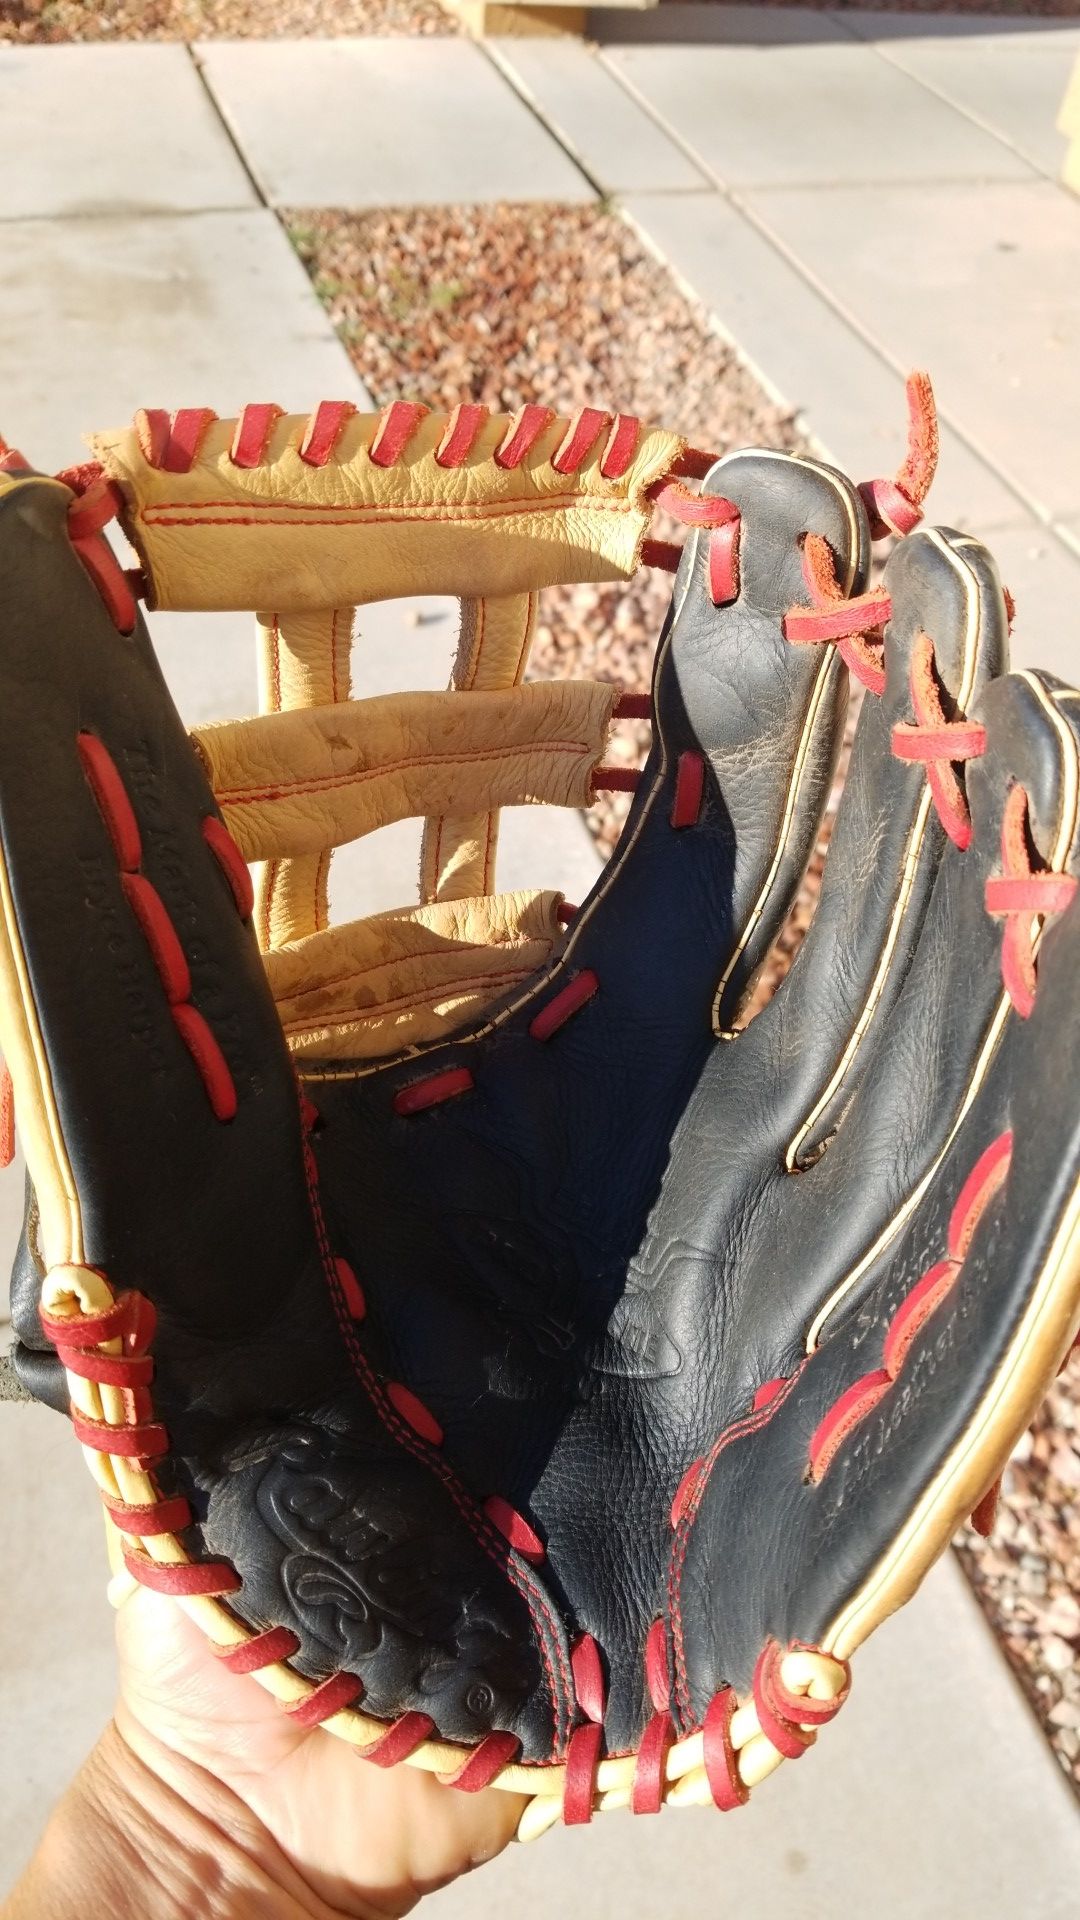 Rawlings 12 in baseball glove